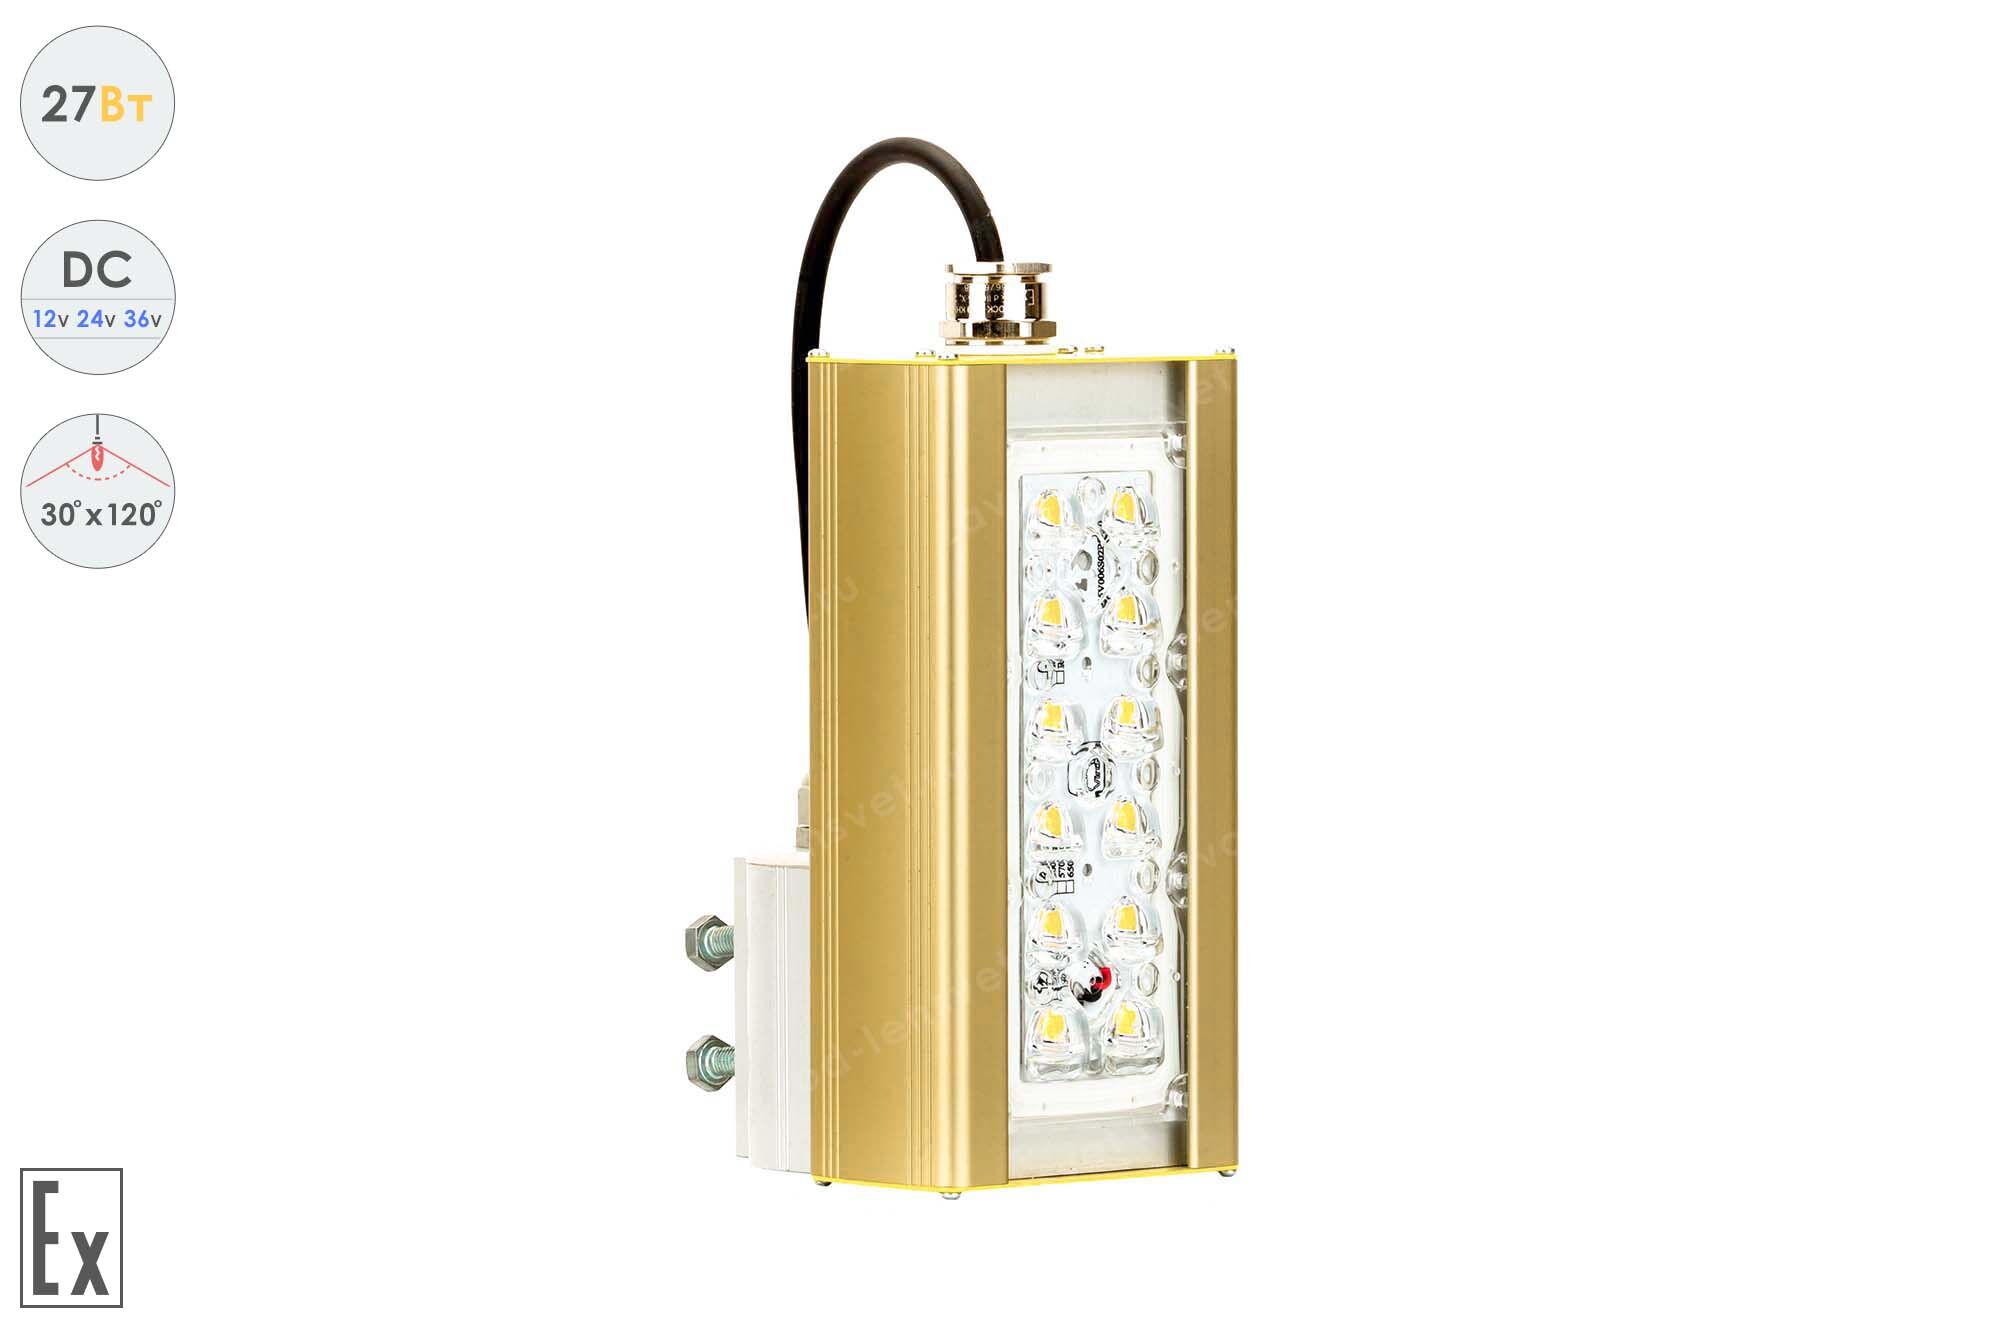 Светодиодный светильник Низковольтный Магистраль Взрывозащищенная GOLD, консоль K-1, 27 Вт, 30X120°